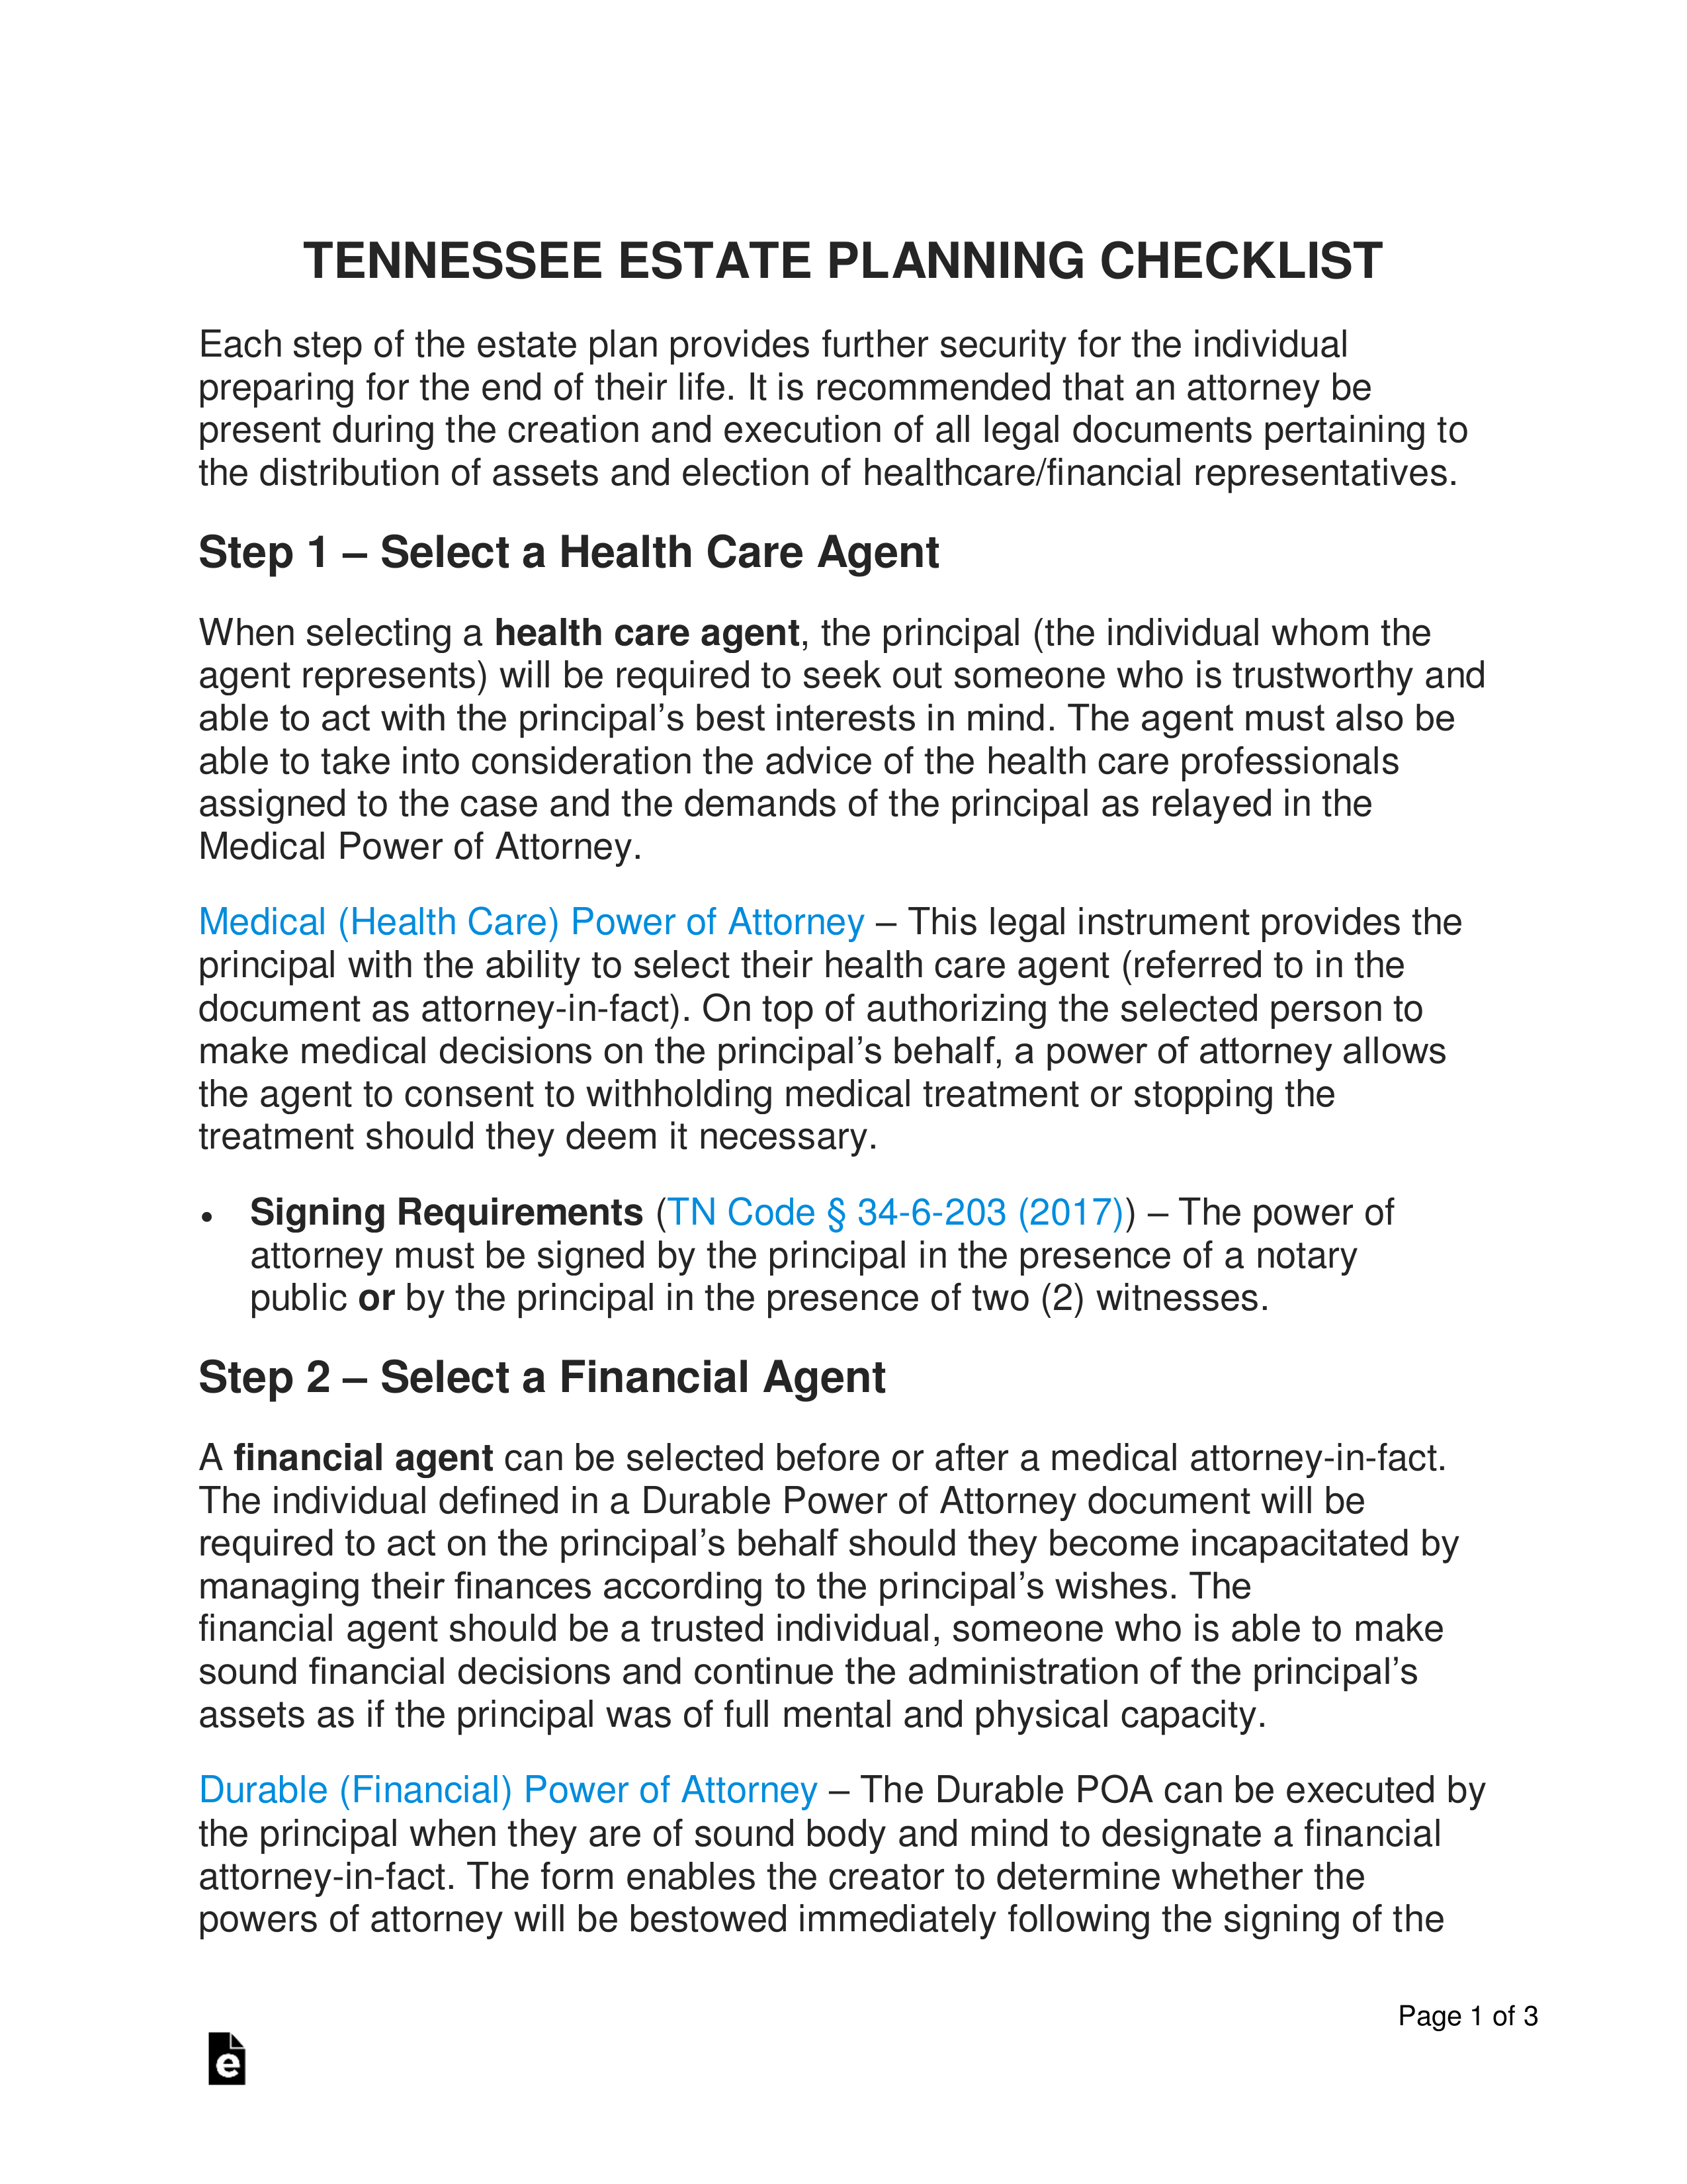 Tennessee Estate Planning Checklist